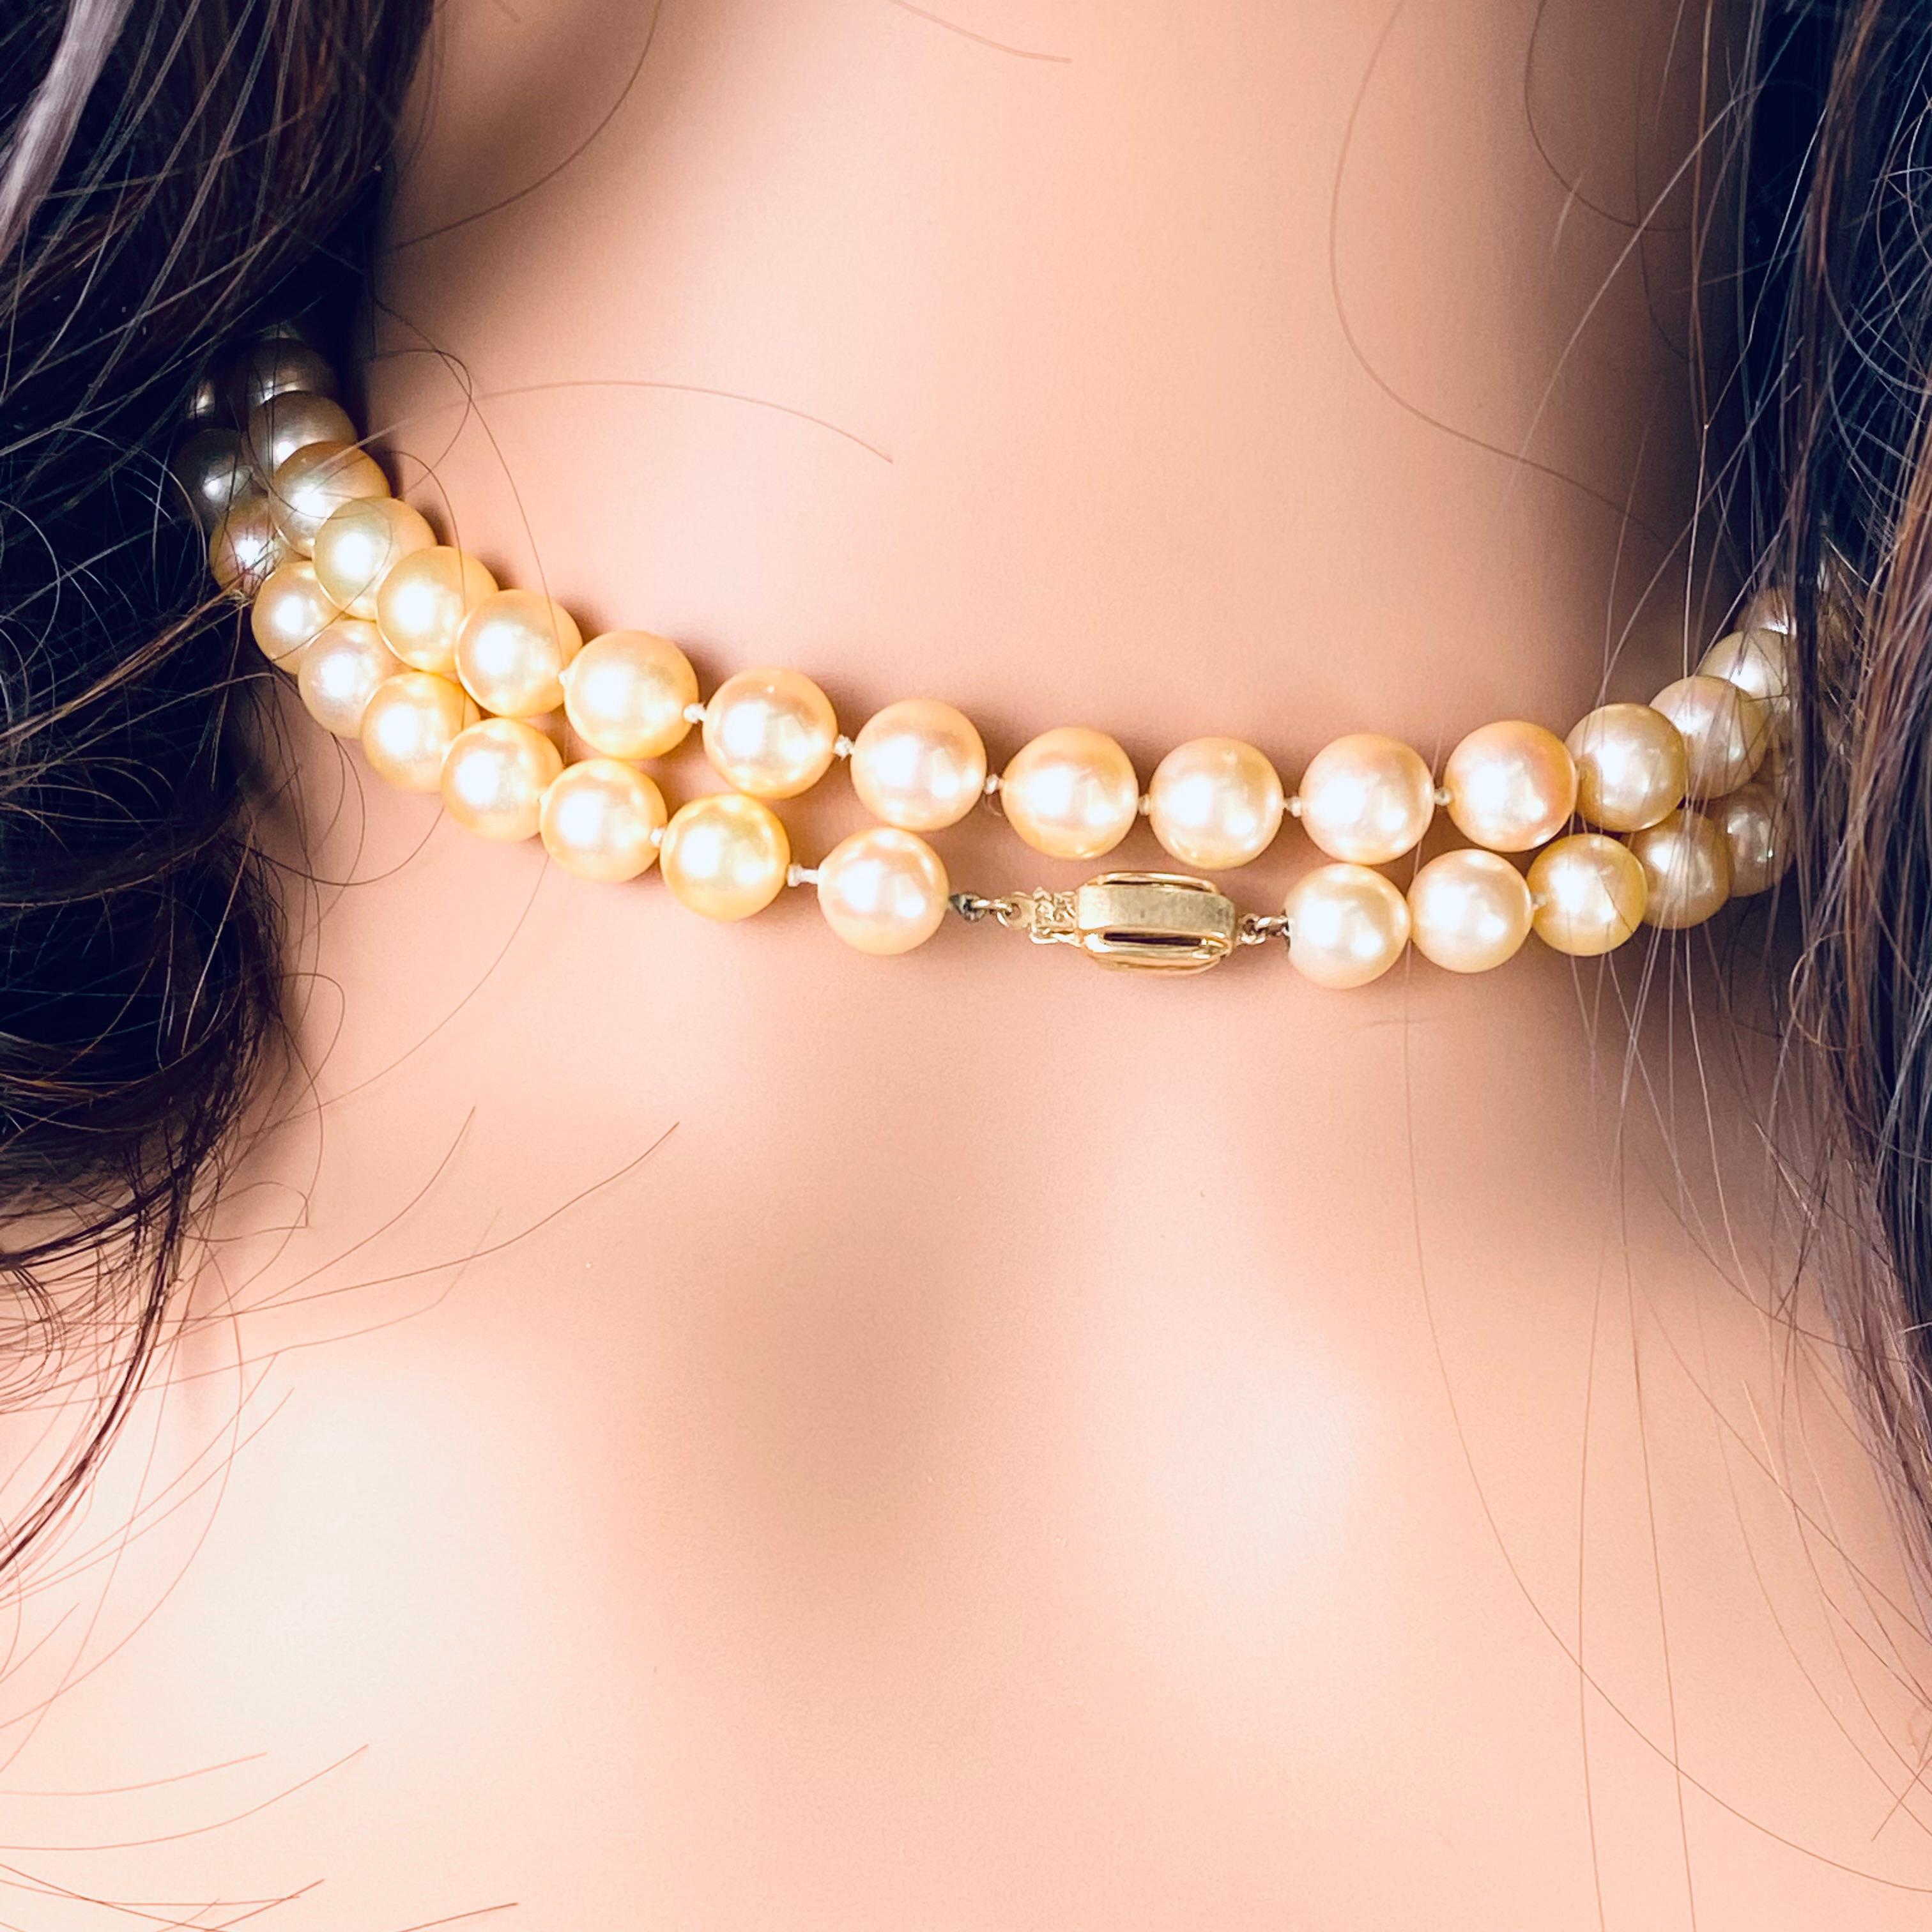 Vintage 1970s Double Strand Cultured Pearl Necklace - Creamy Beige Golden Hue, 30-Inch Length, 14K Yellow Gold Clasp
Description :
Replongez dans l'ère glamour des années 1970 avec ce collier exquis de perles de culture à deux rangs. Fabriquée avec